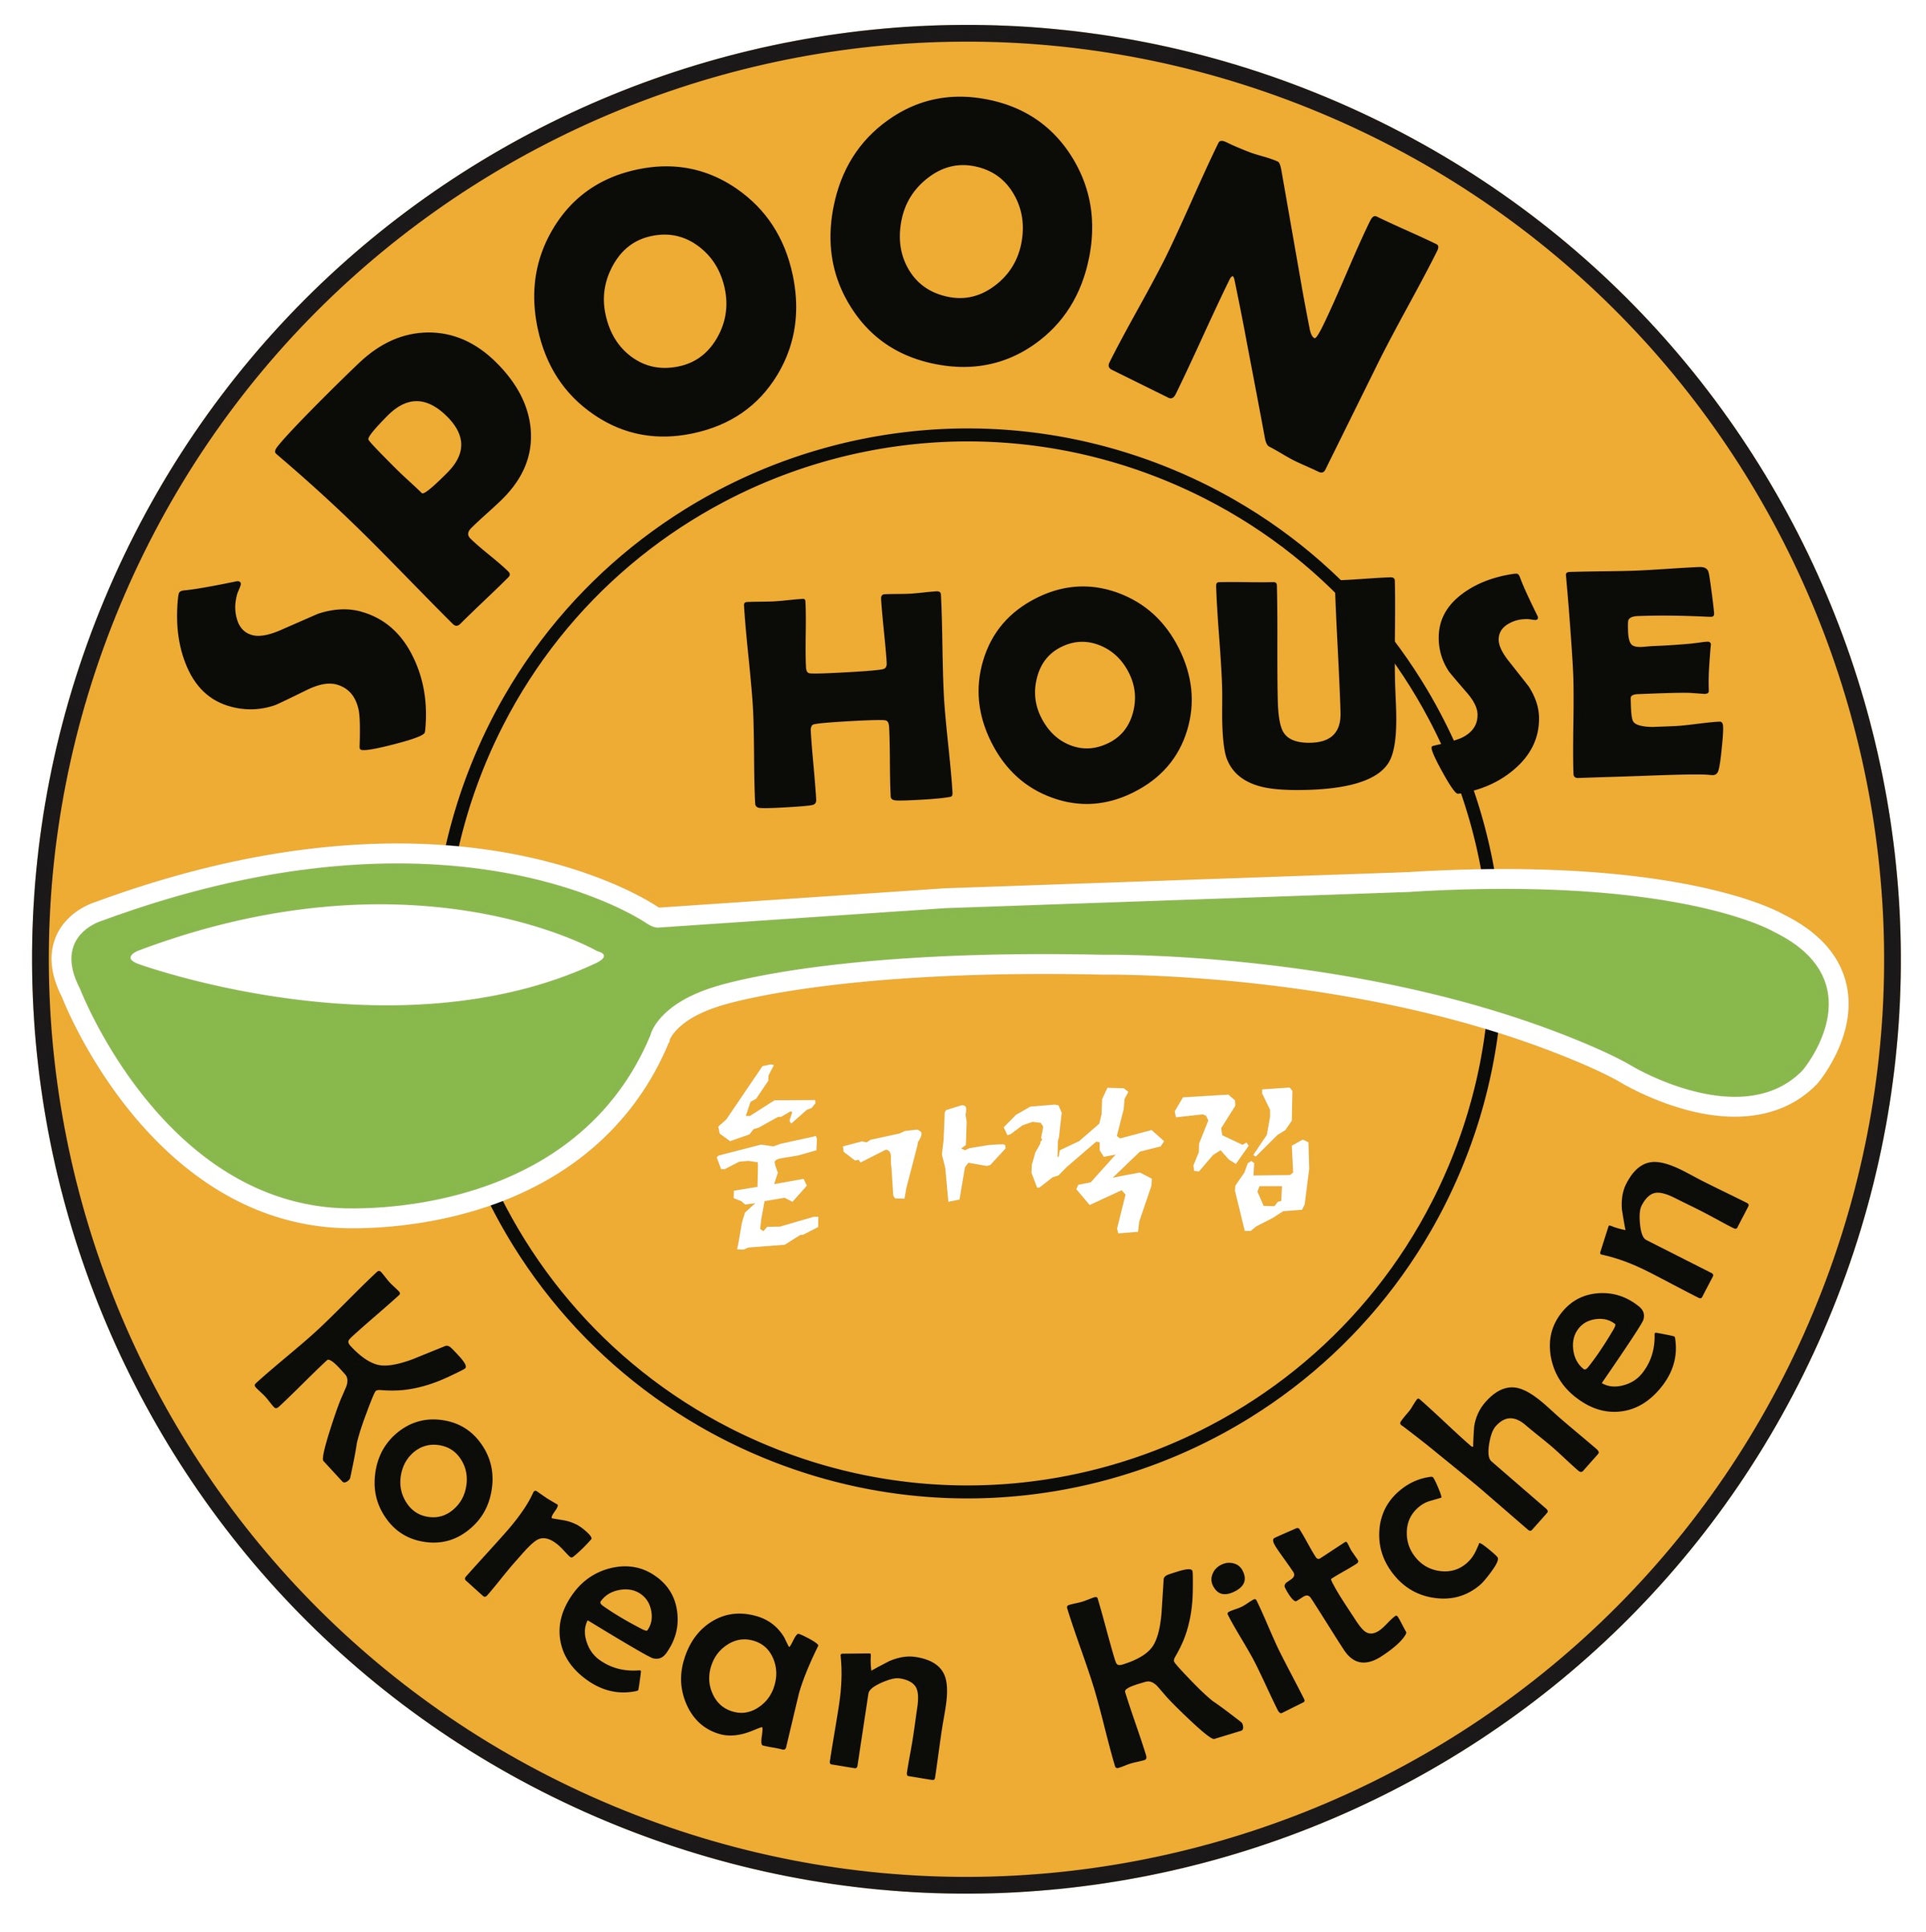 Home  Spoon House Korean Kitchen